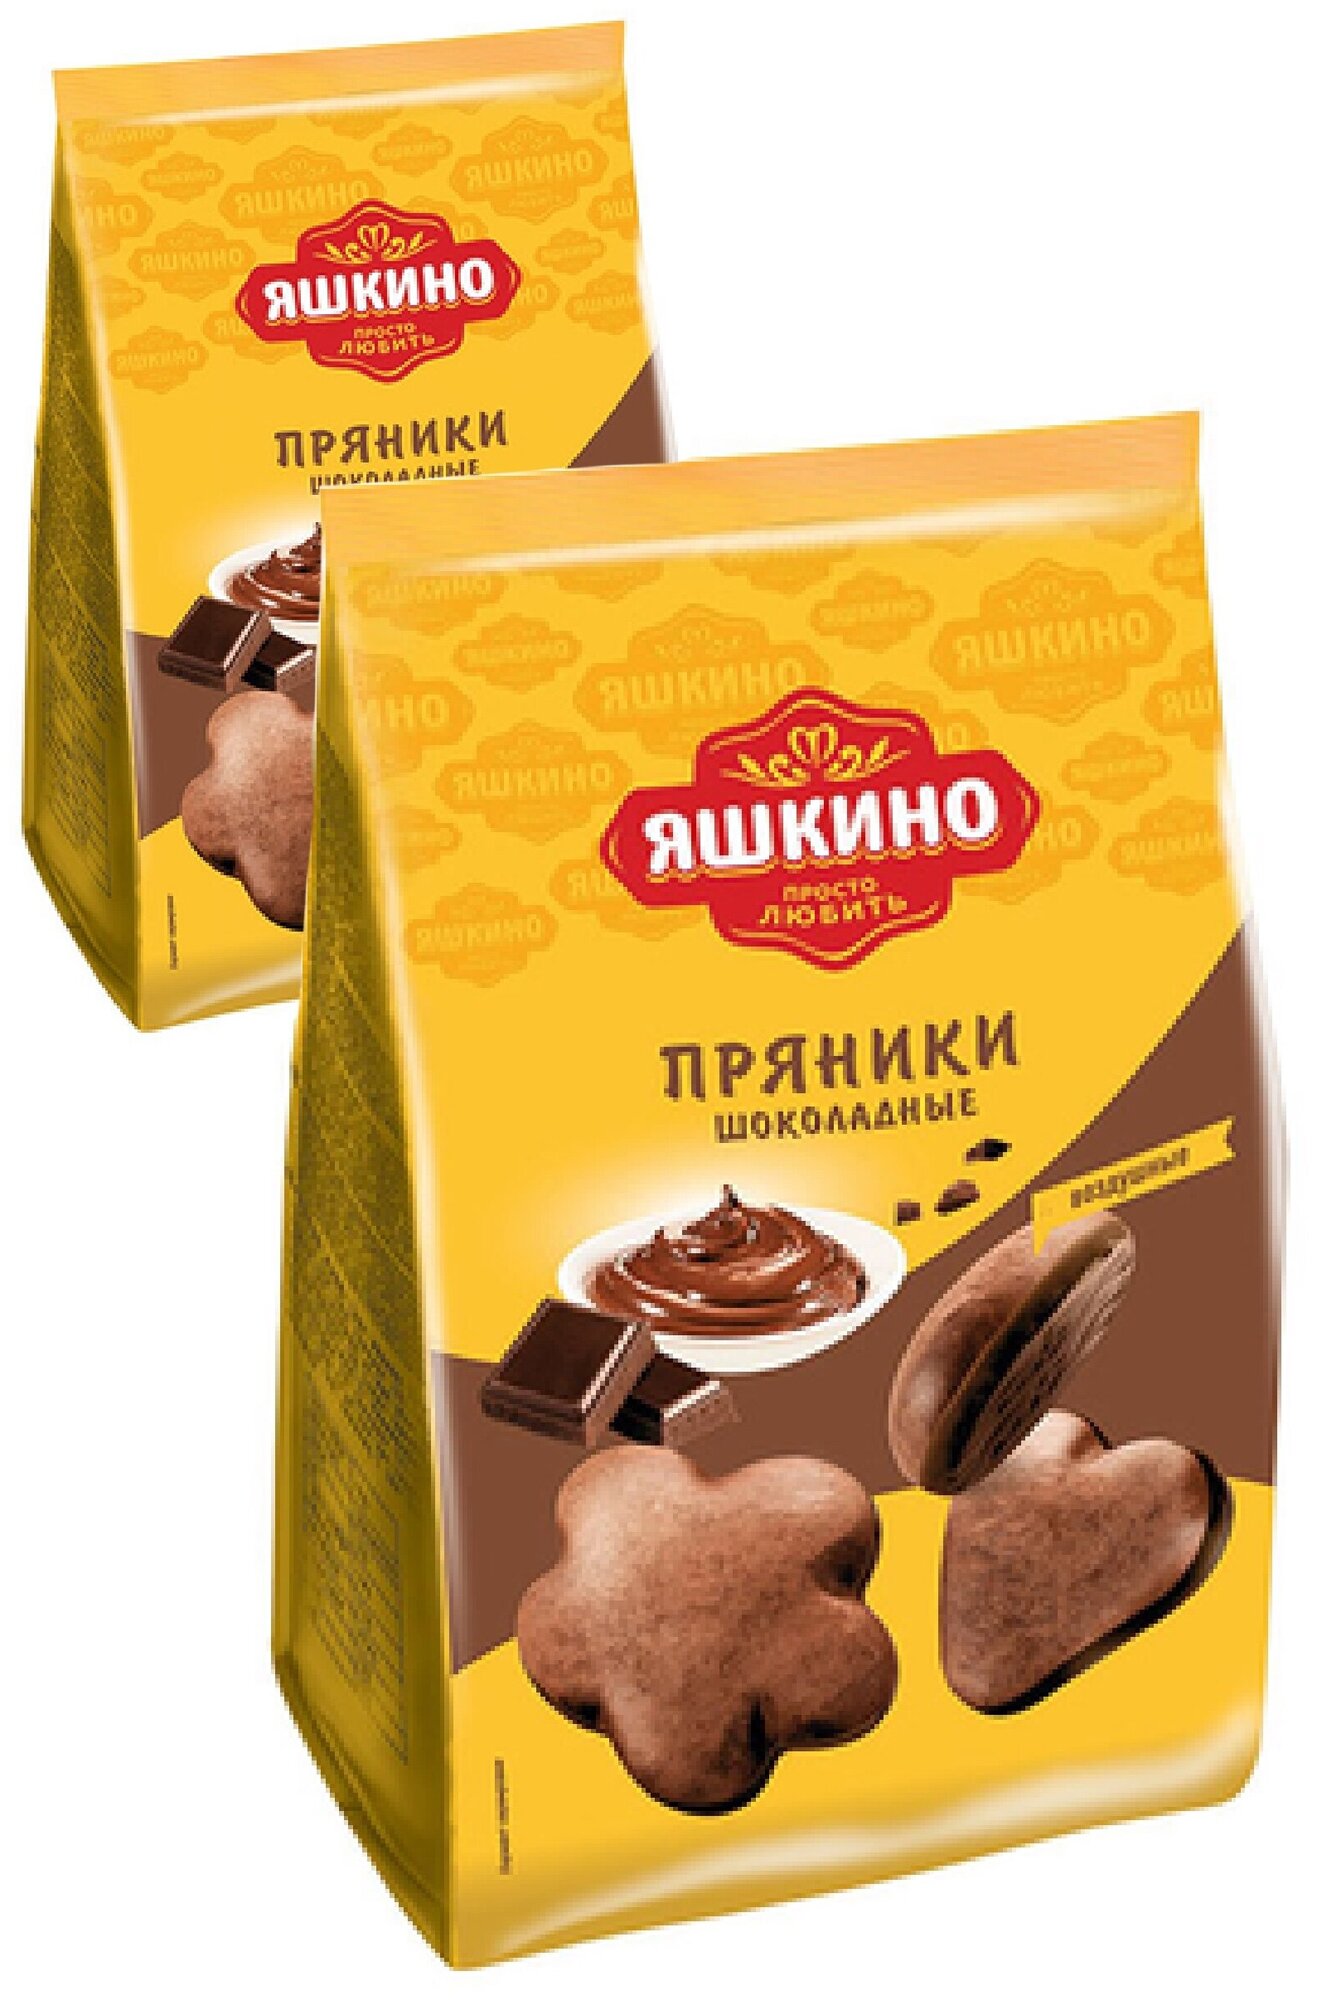 «Яшкино», пряники «Шоколадные»,2 упаковки по 350 г